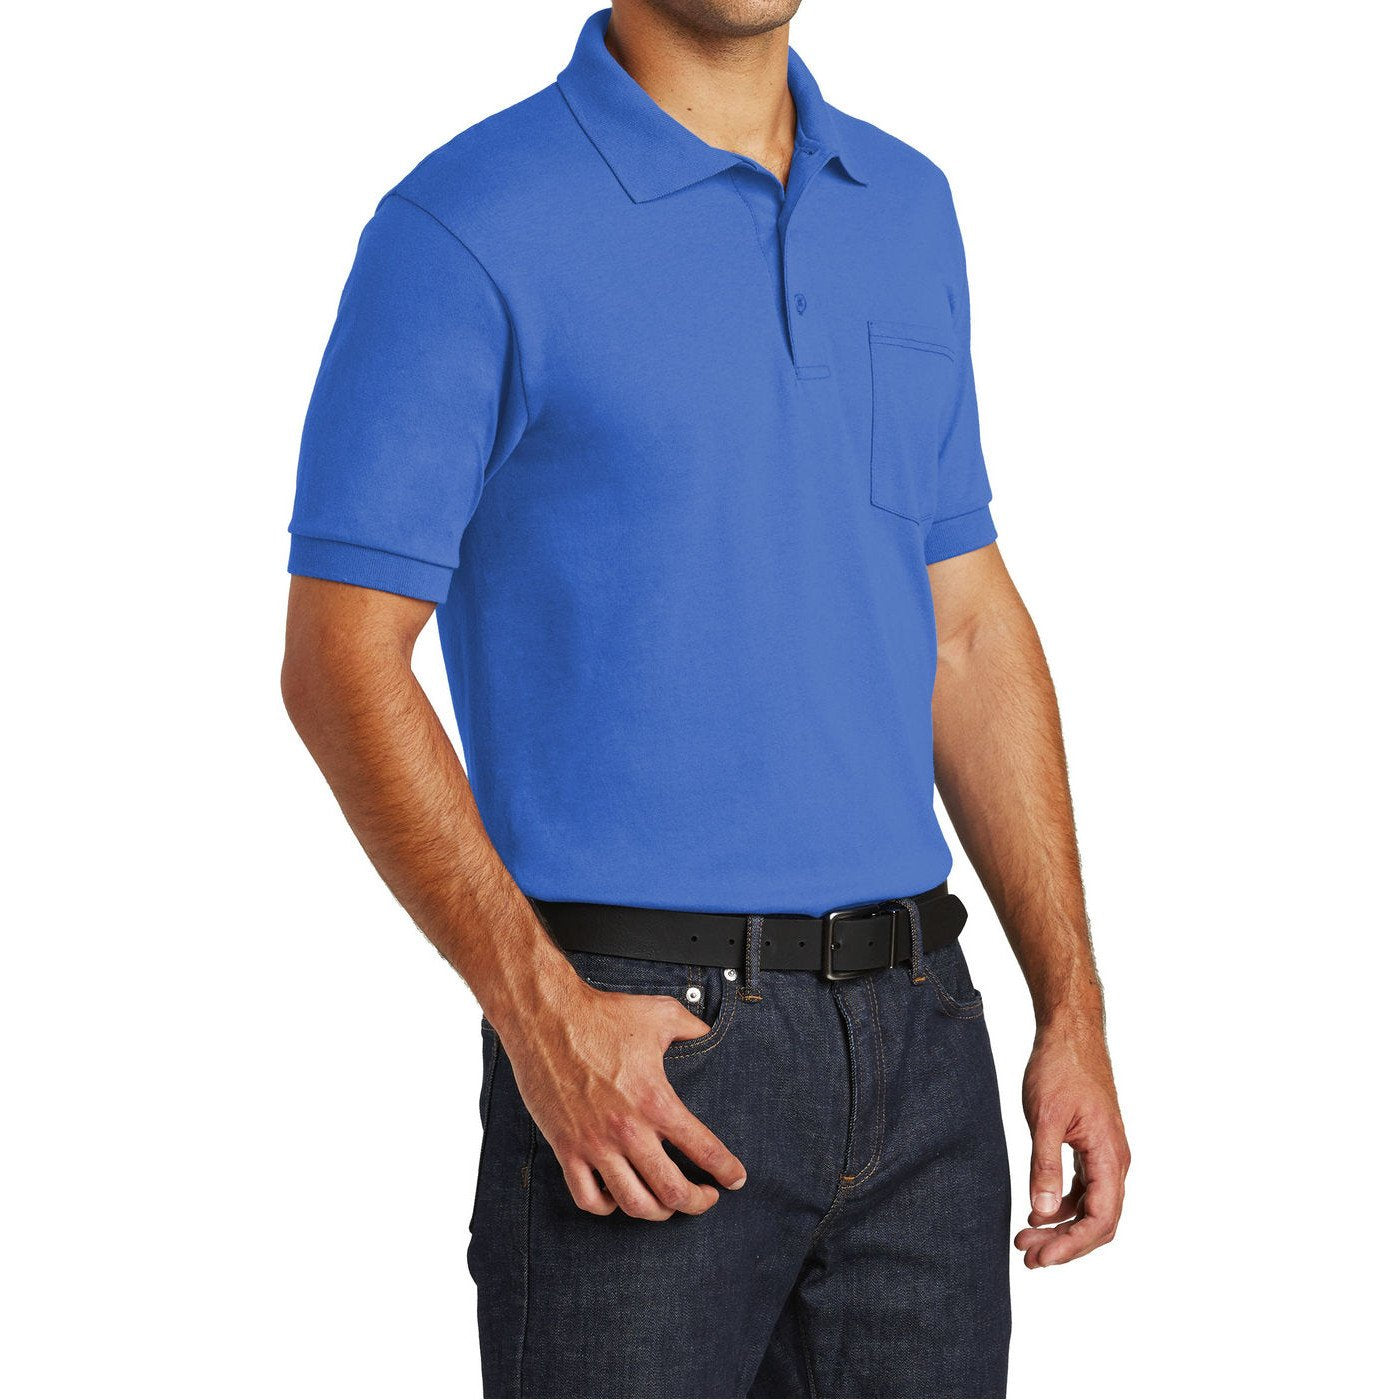 Mafoose Men's Core Blend Jersey Knit Pocket Polo Shirt Royal